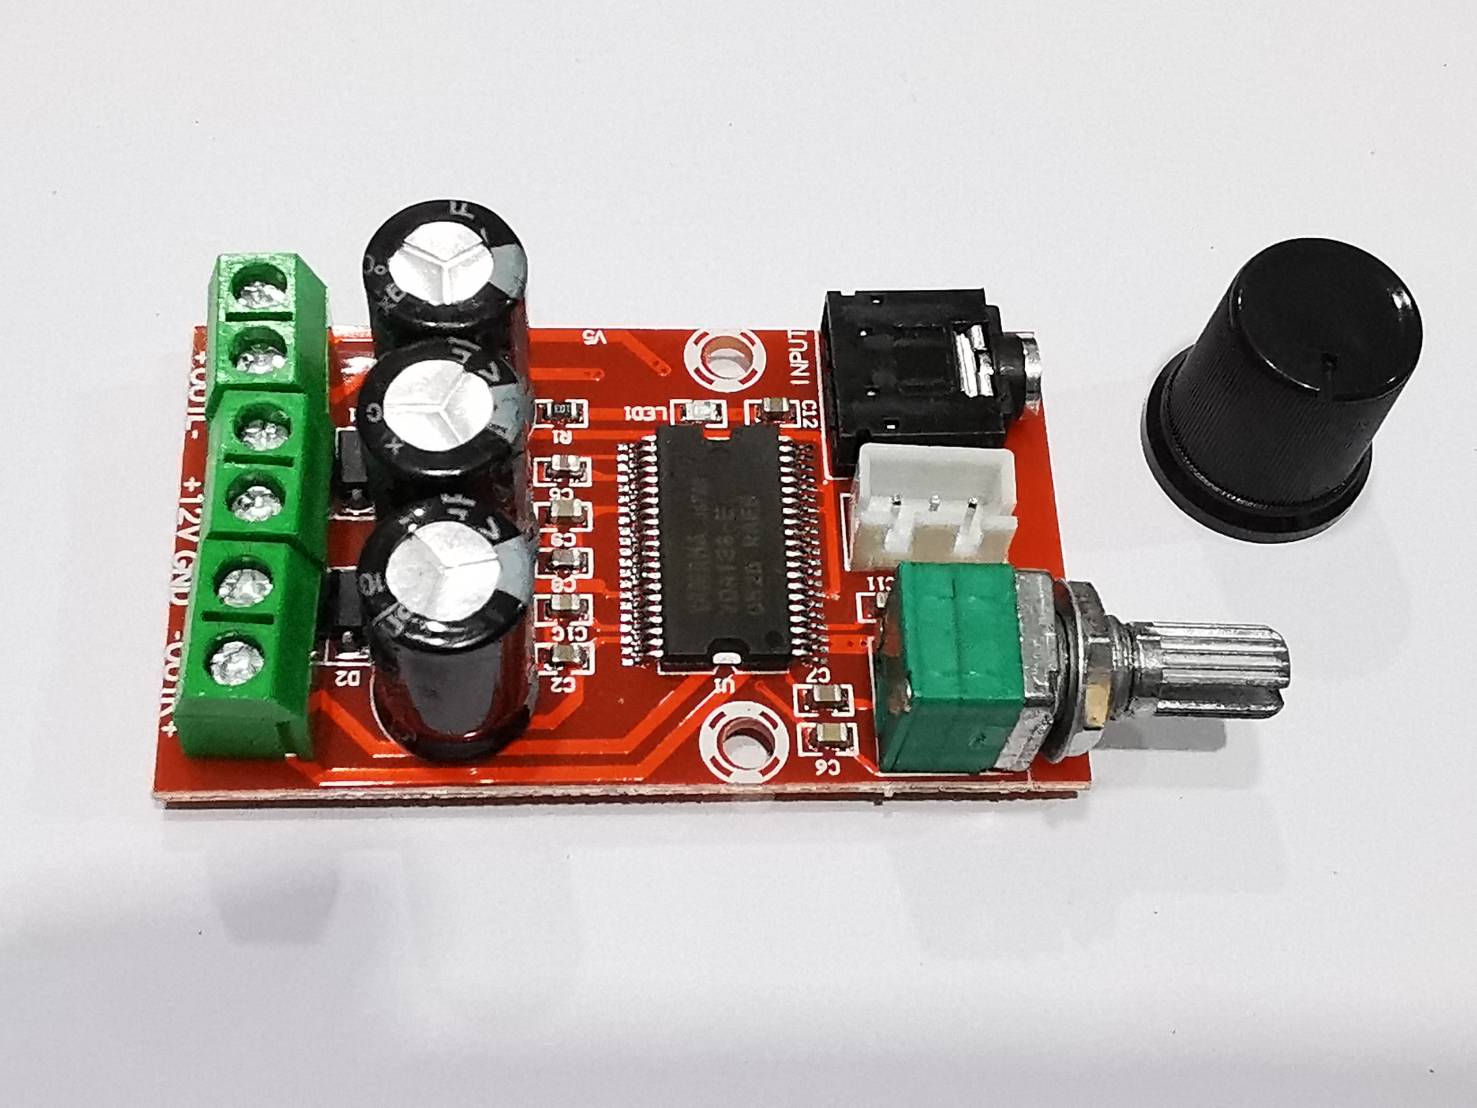 บอร์ดเครื่องขยายเสียง 2Ch. YDA138-E มี2รุ่น 12Wx2 กับ 20Wx2  Aux Input Jack 3.5mm.มี Volume control Power supply 12 Volt. YDA138-E Digital Amplifier Board Stereo HIFI Class D Audio Amplifier Board Chip Yamaha